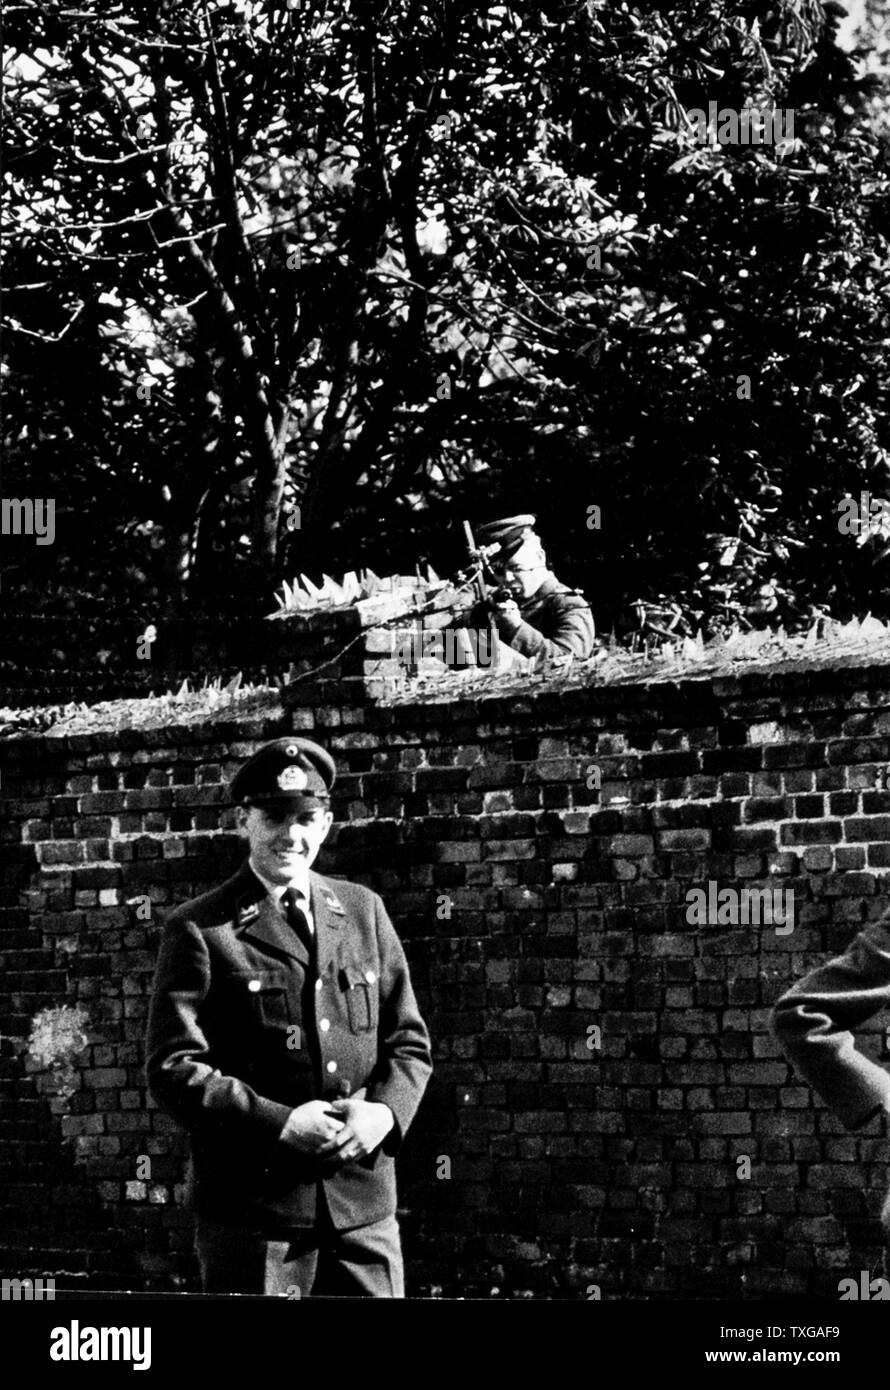 El muro de Berlín. West Berliner en uniforme delante del muro de Berlín, el soldado apuntando pistola a la pared. Foto de stock